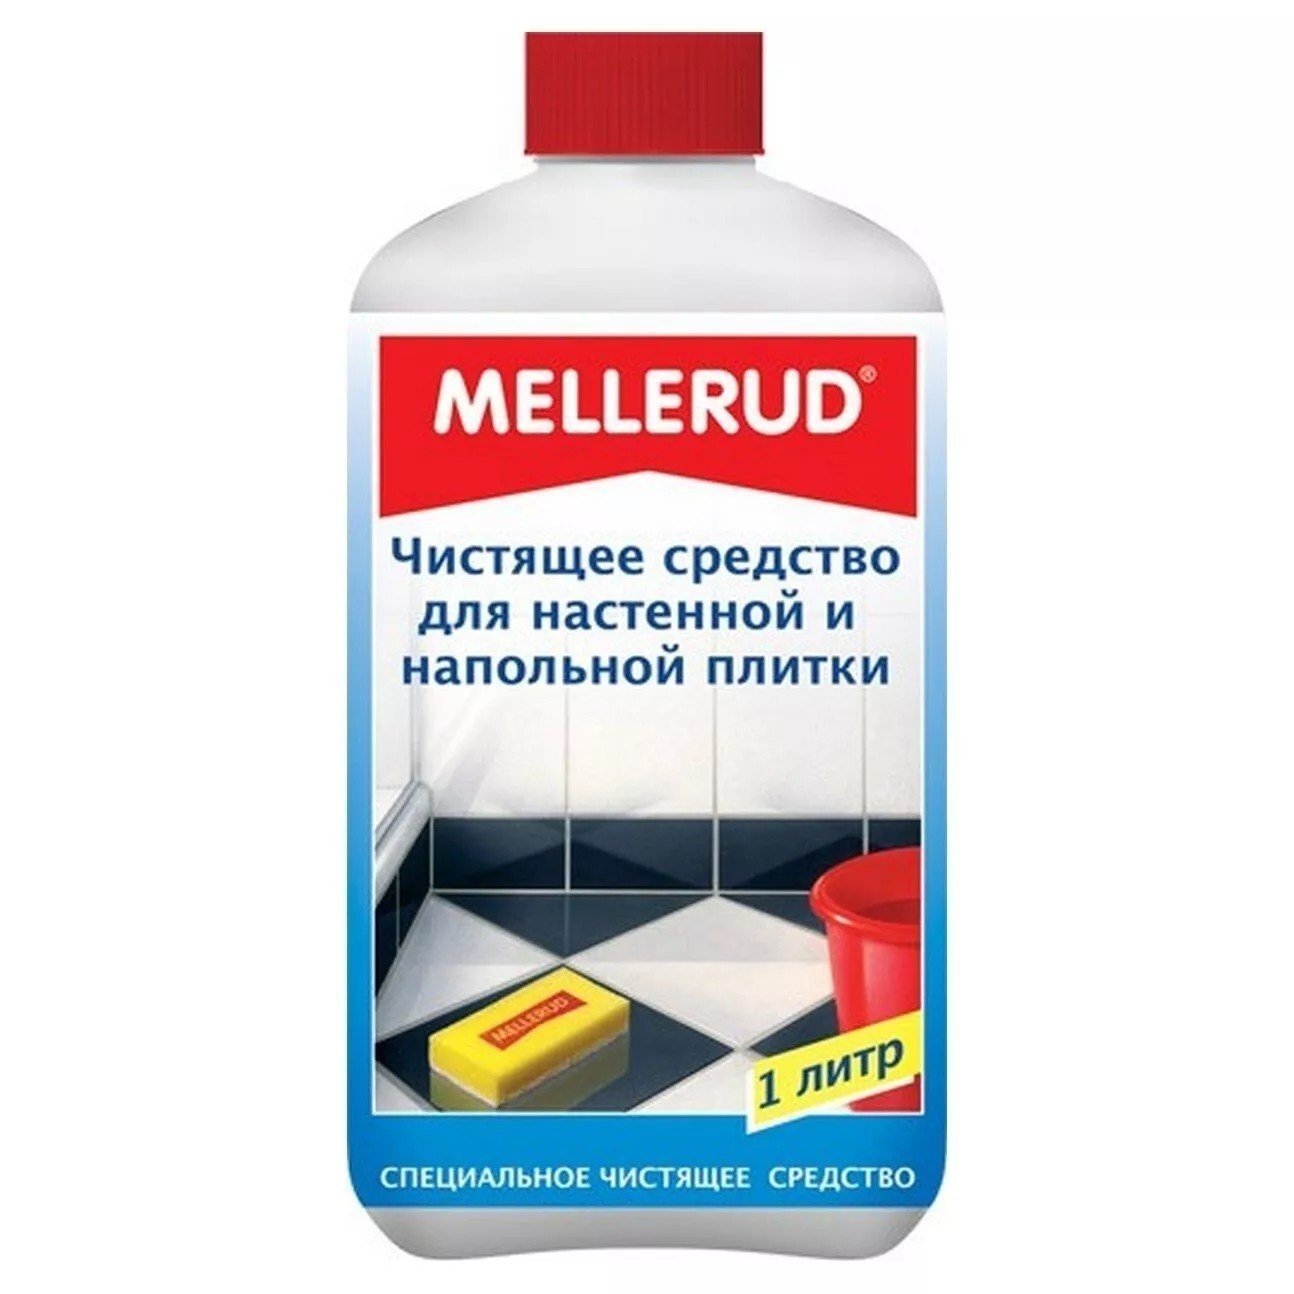 Mellerud моющее средство для настенной и напольной плитки